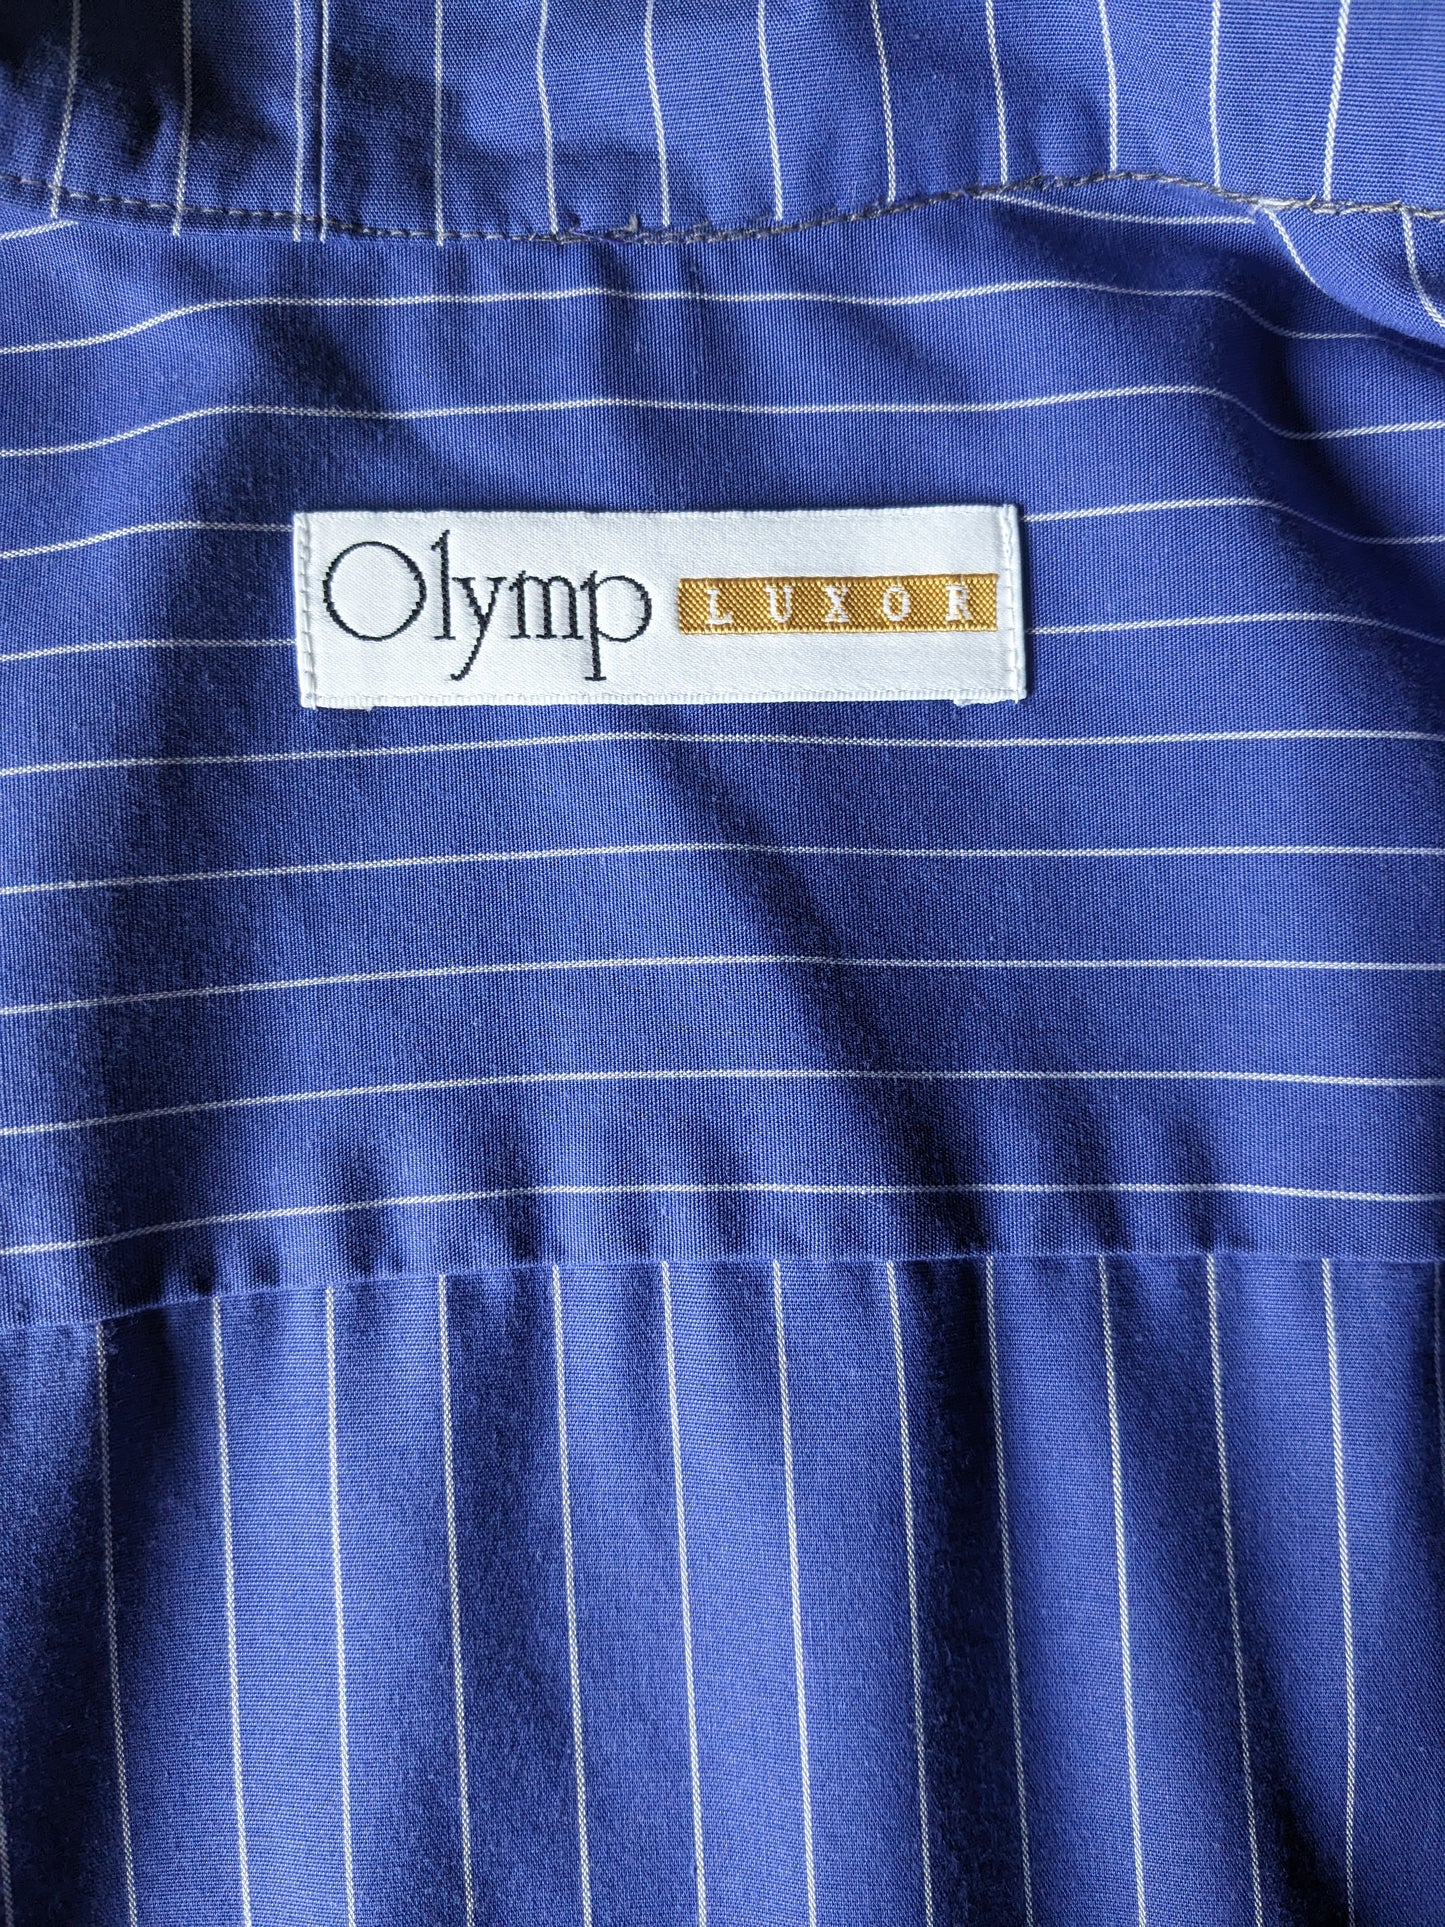 Camicia Luxor Olymping vintage con Mao / Farmer / Collar in piedi. Strisce bianche blu. Taglia L.